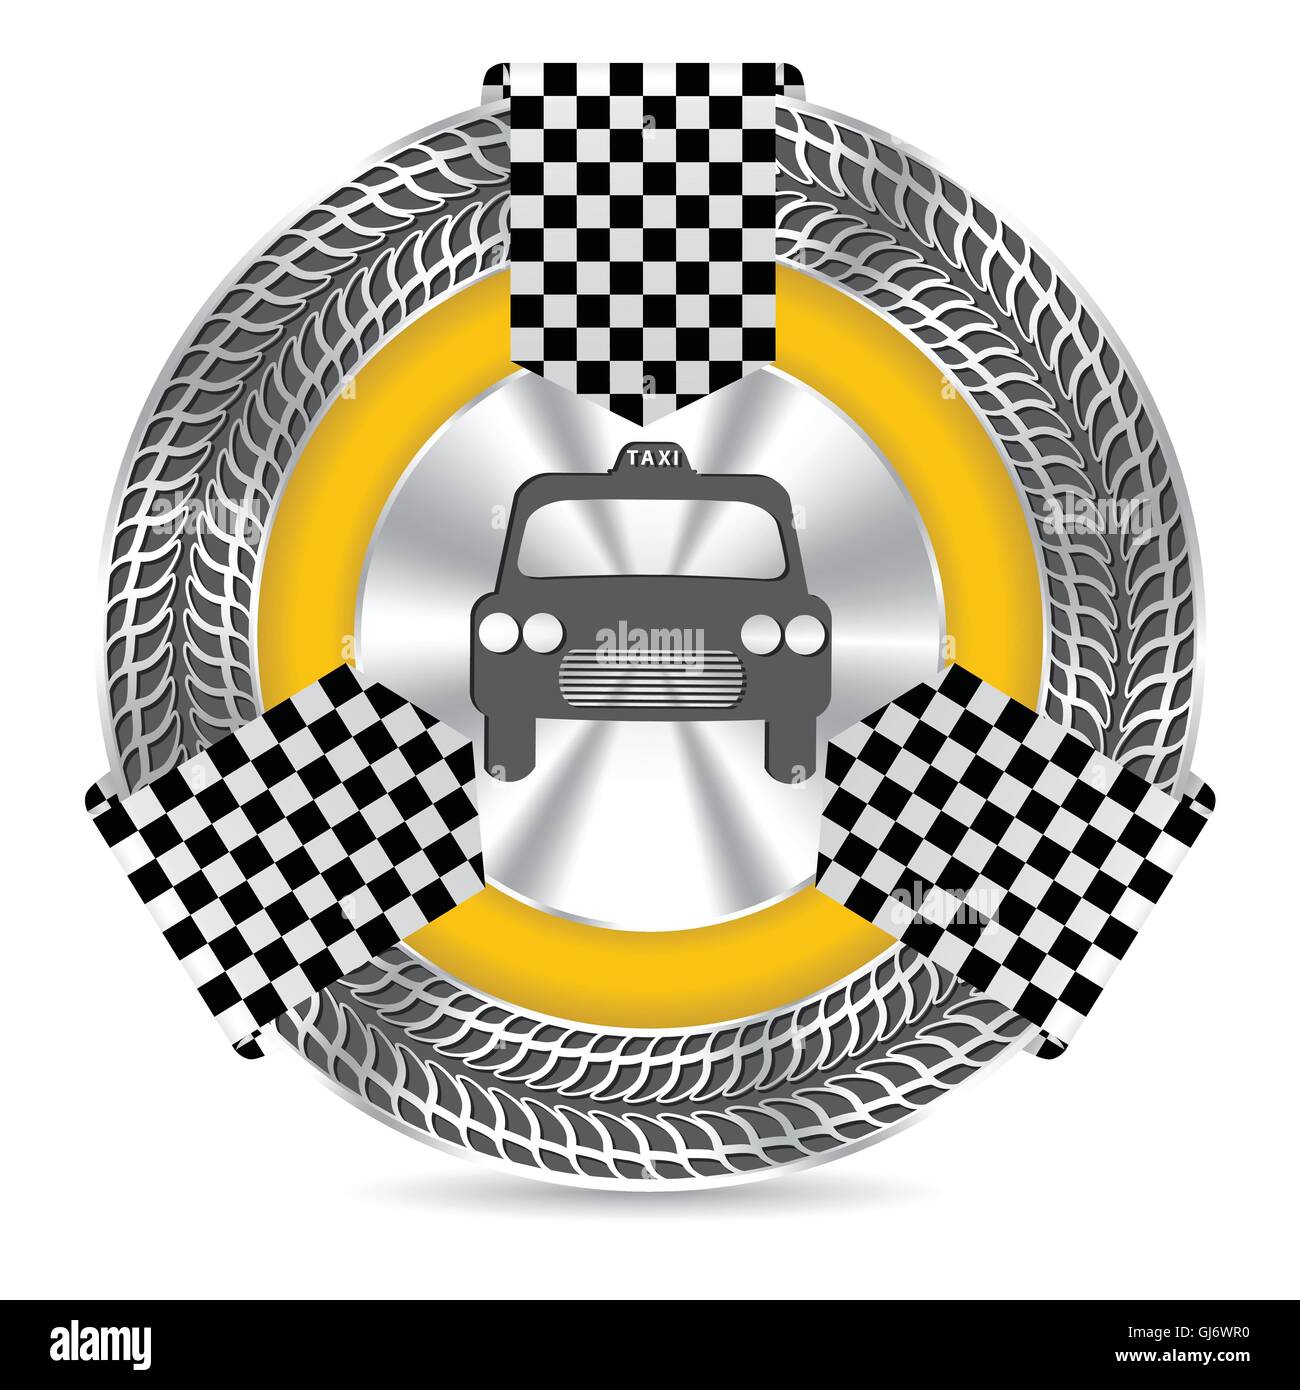 Metallische Taxi-Abzeichen-Design mit Reifen-Lauffläche Stock Vektor